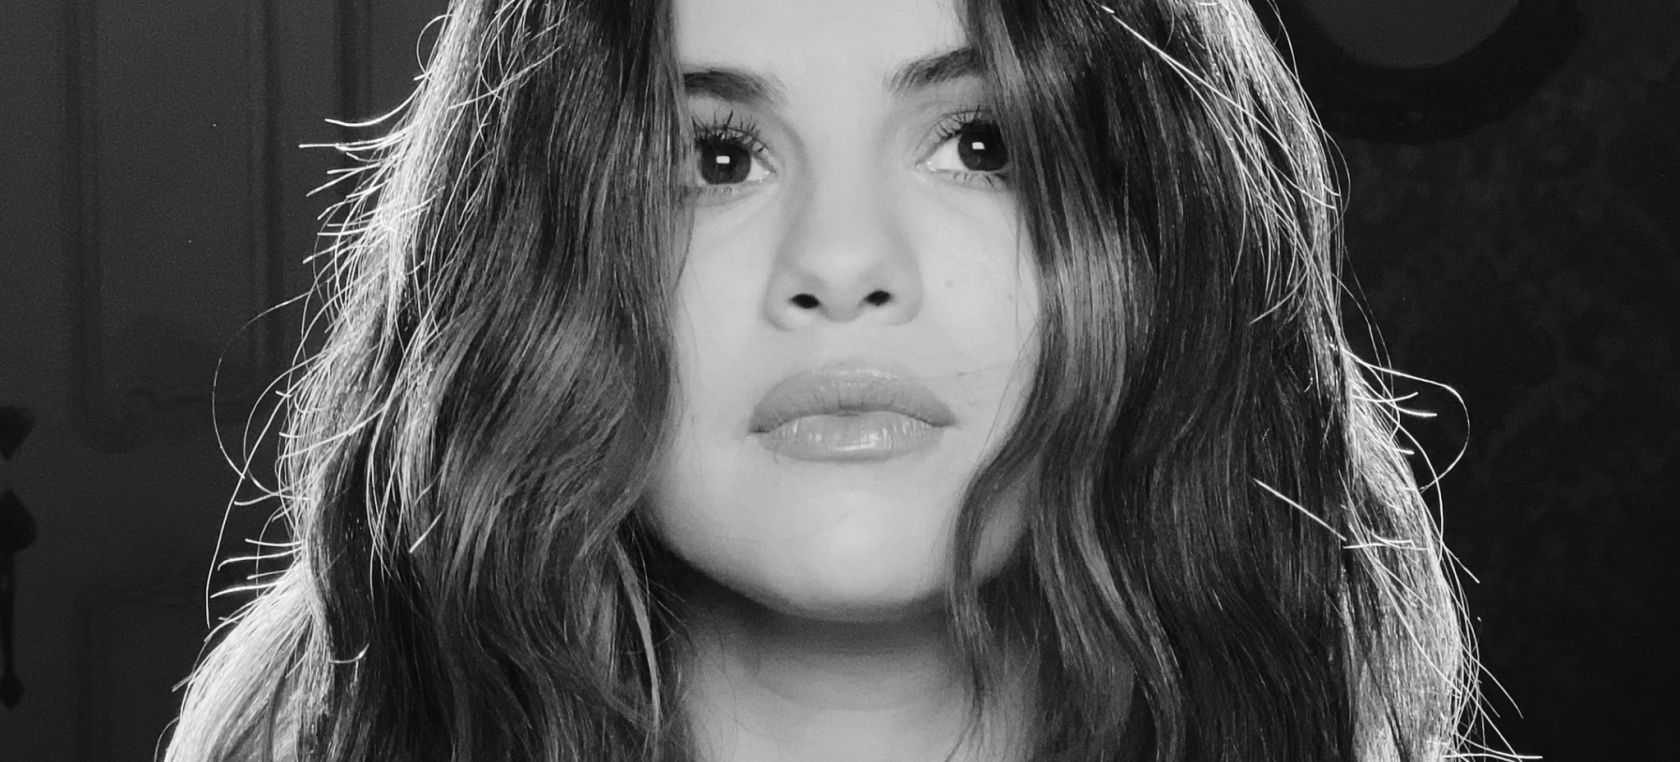 Crítica ‘Rare’: una inconfundible Selena Gomez en la evolución natural de ‘Revival’